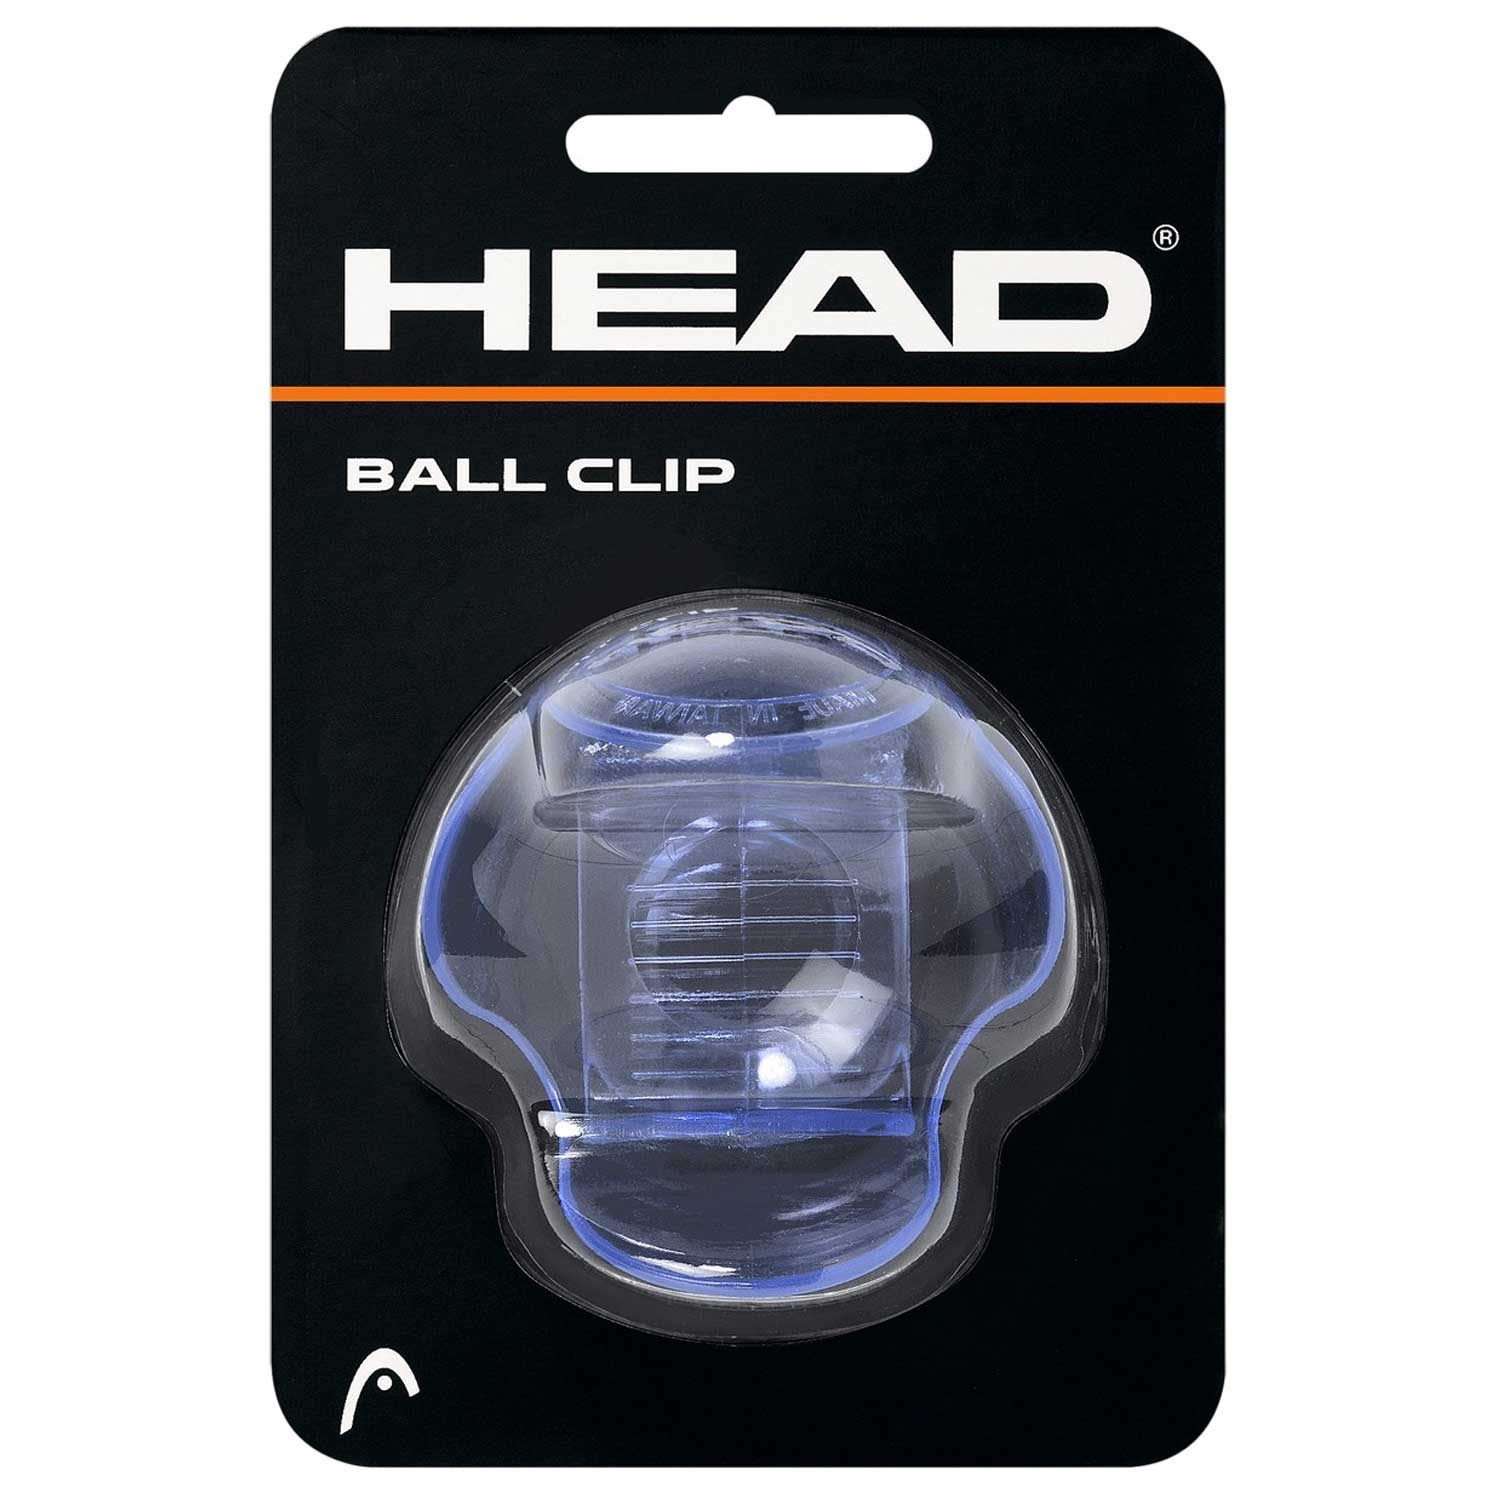 Head New Ball Clip Blue